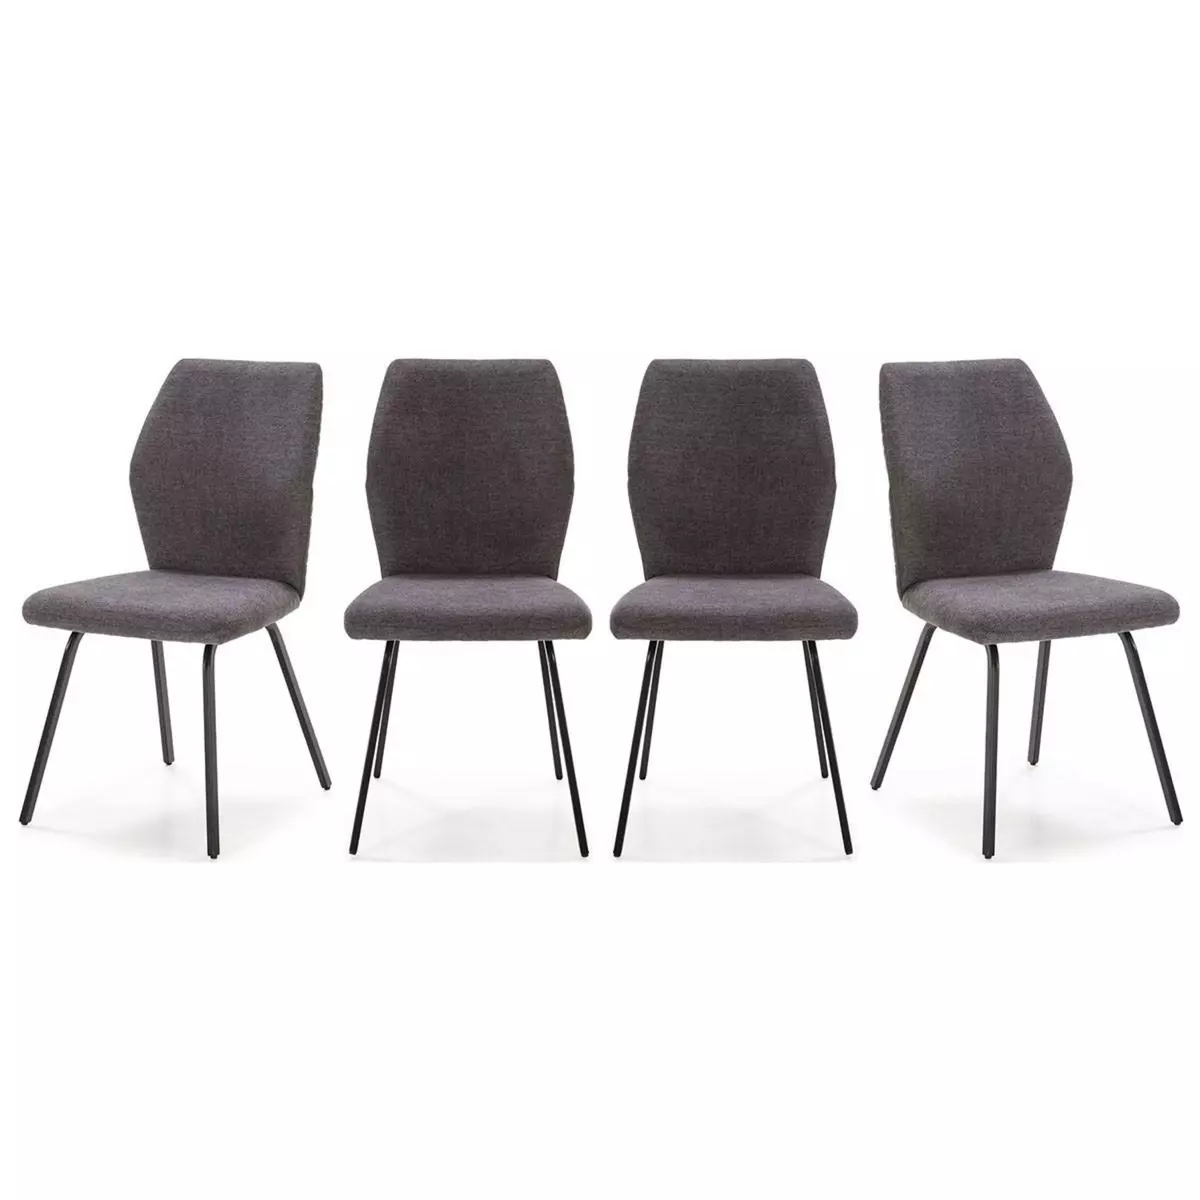 HOMIFAB Lot de 4 chaises en tissu gris foncé et simili cuir - Garance